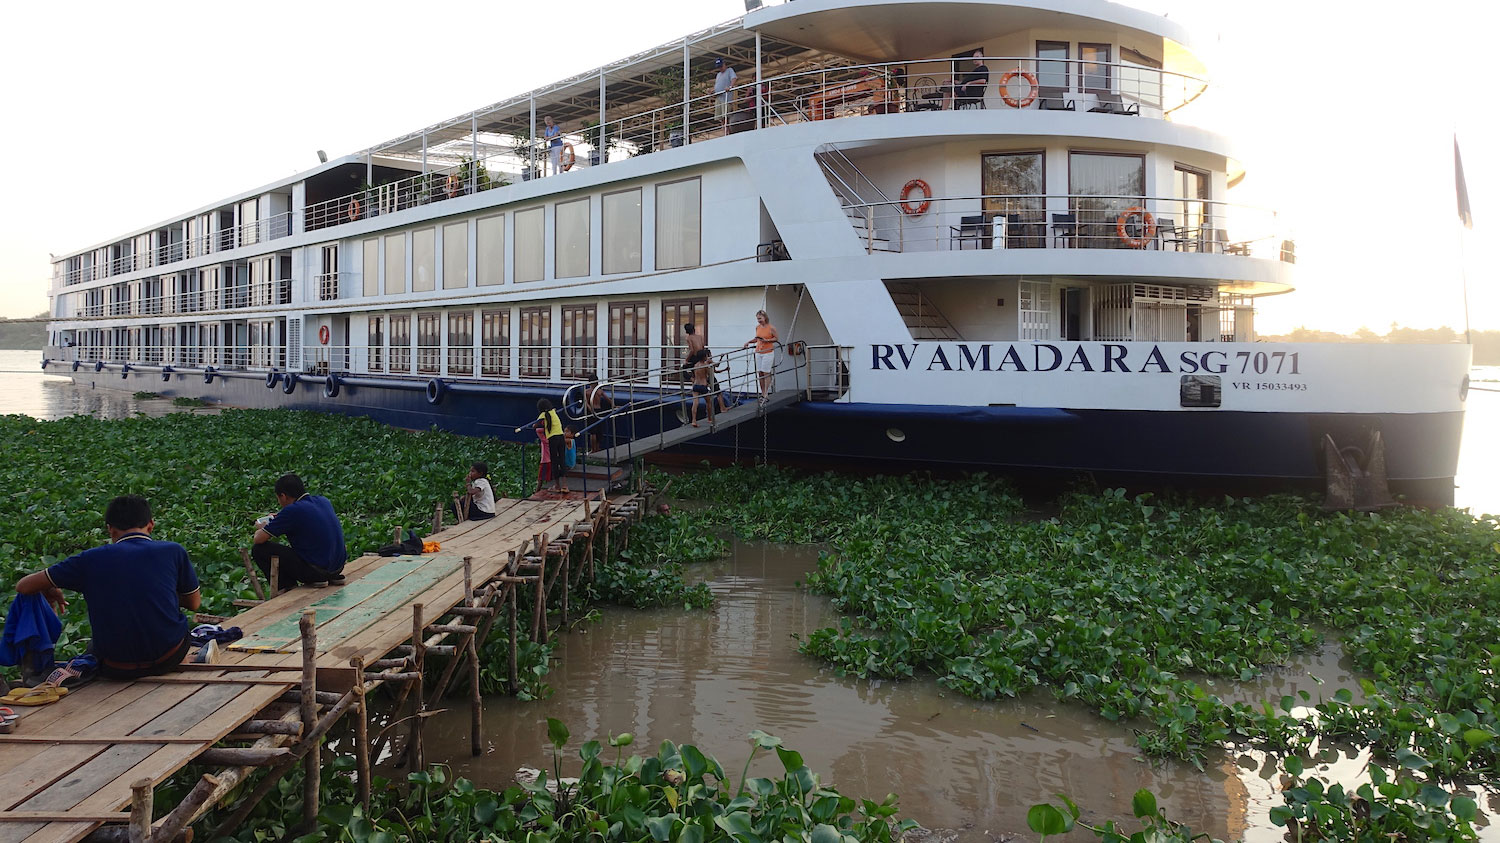 AmaWaterways Mekong Cruise